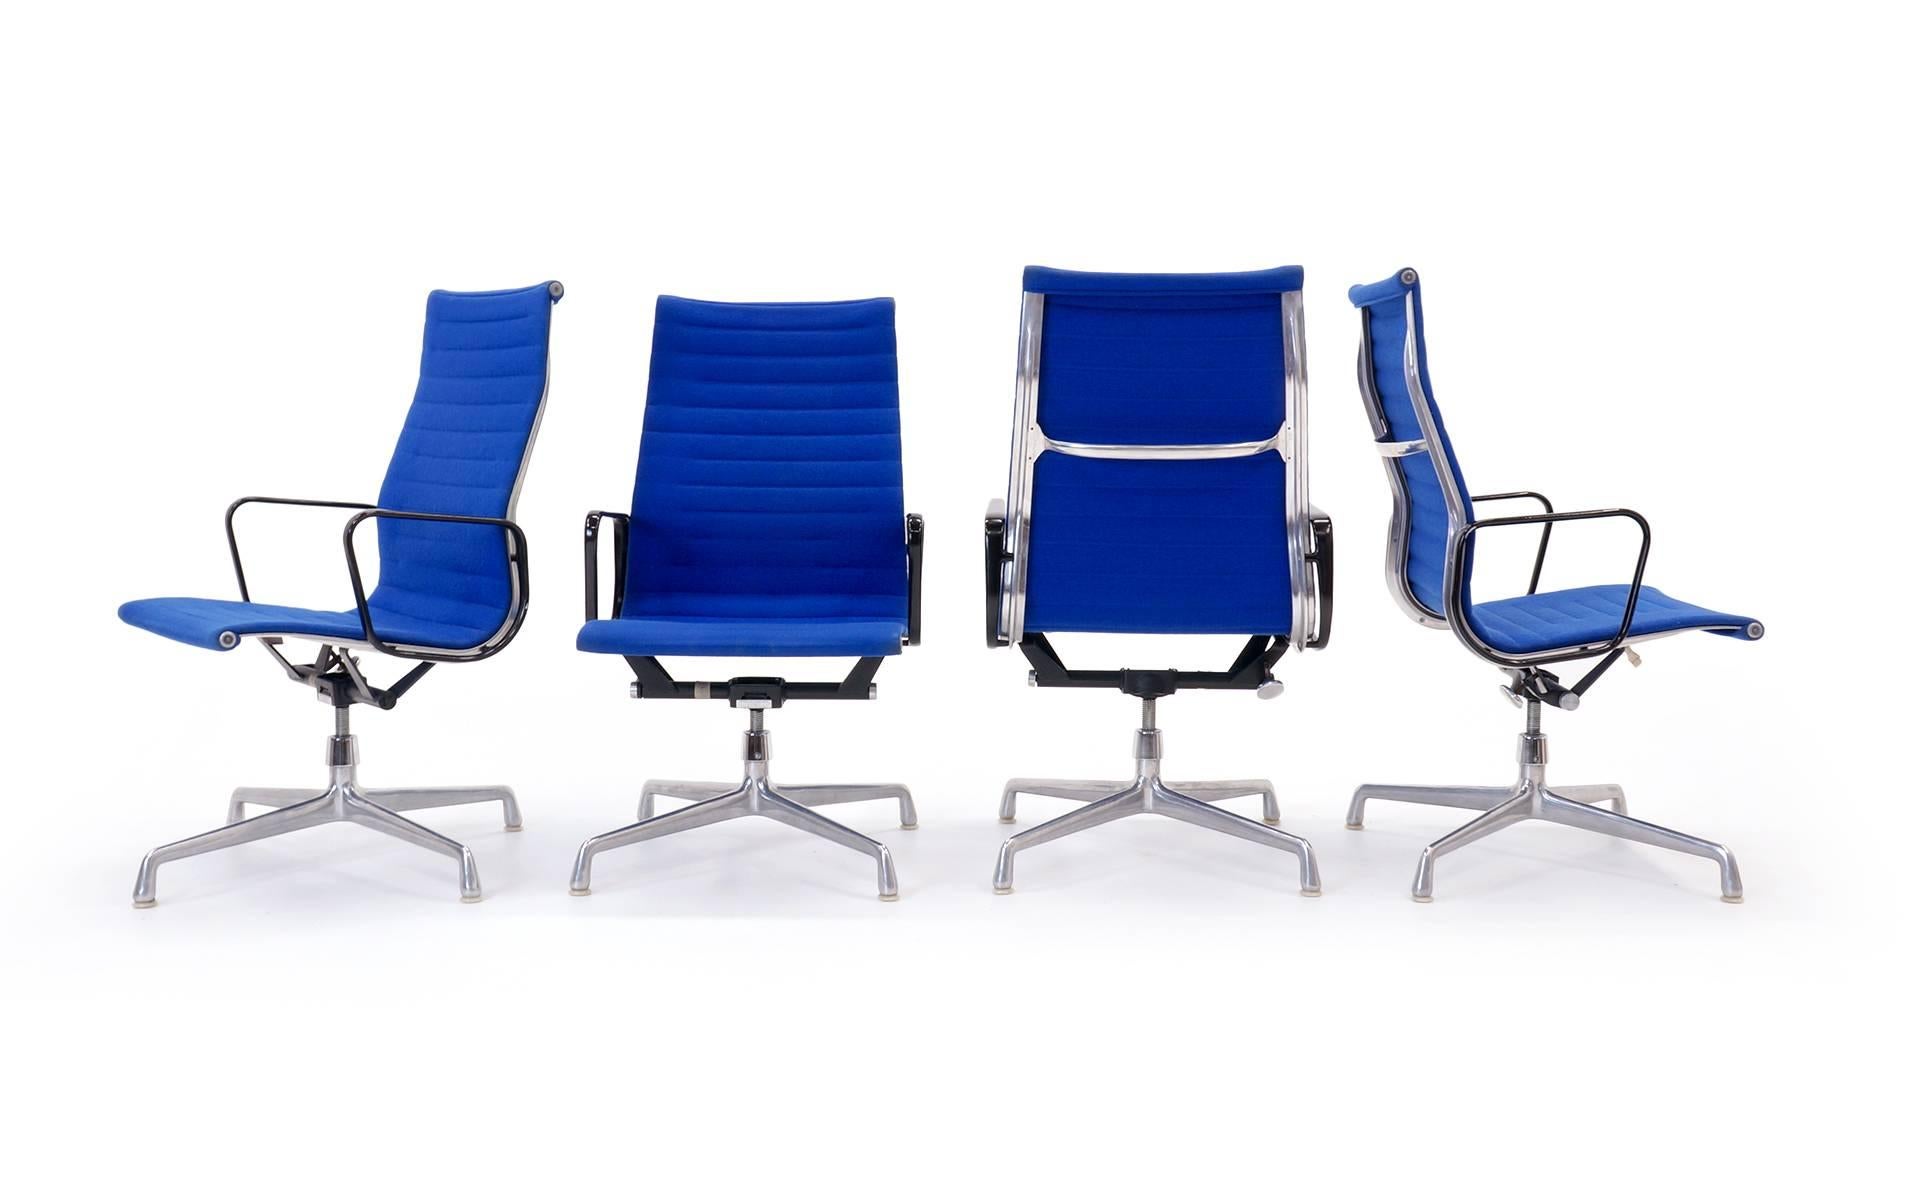 Sechs verfügbar. Eames for Herman Miller Aluminiumstühle mit hoher Rückenlehne und Armlehnen, die mit dem Originalstoff von Alexander Girard for Herman Miller bezogen sind. Die Stühle behalten ihre ursprünglichen Vier-Sterne-Guss-Aluminiumfüße.